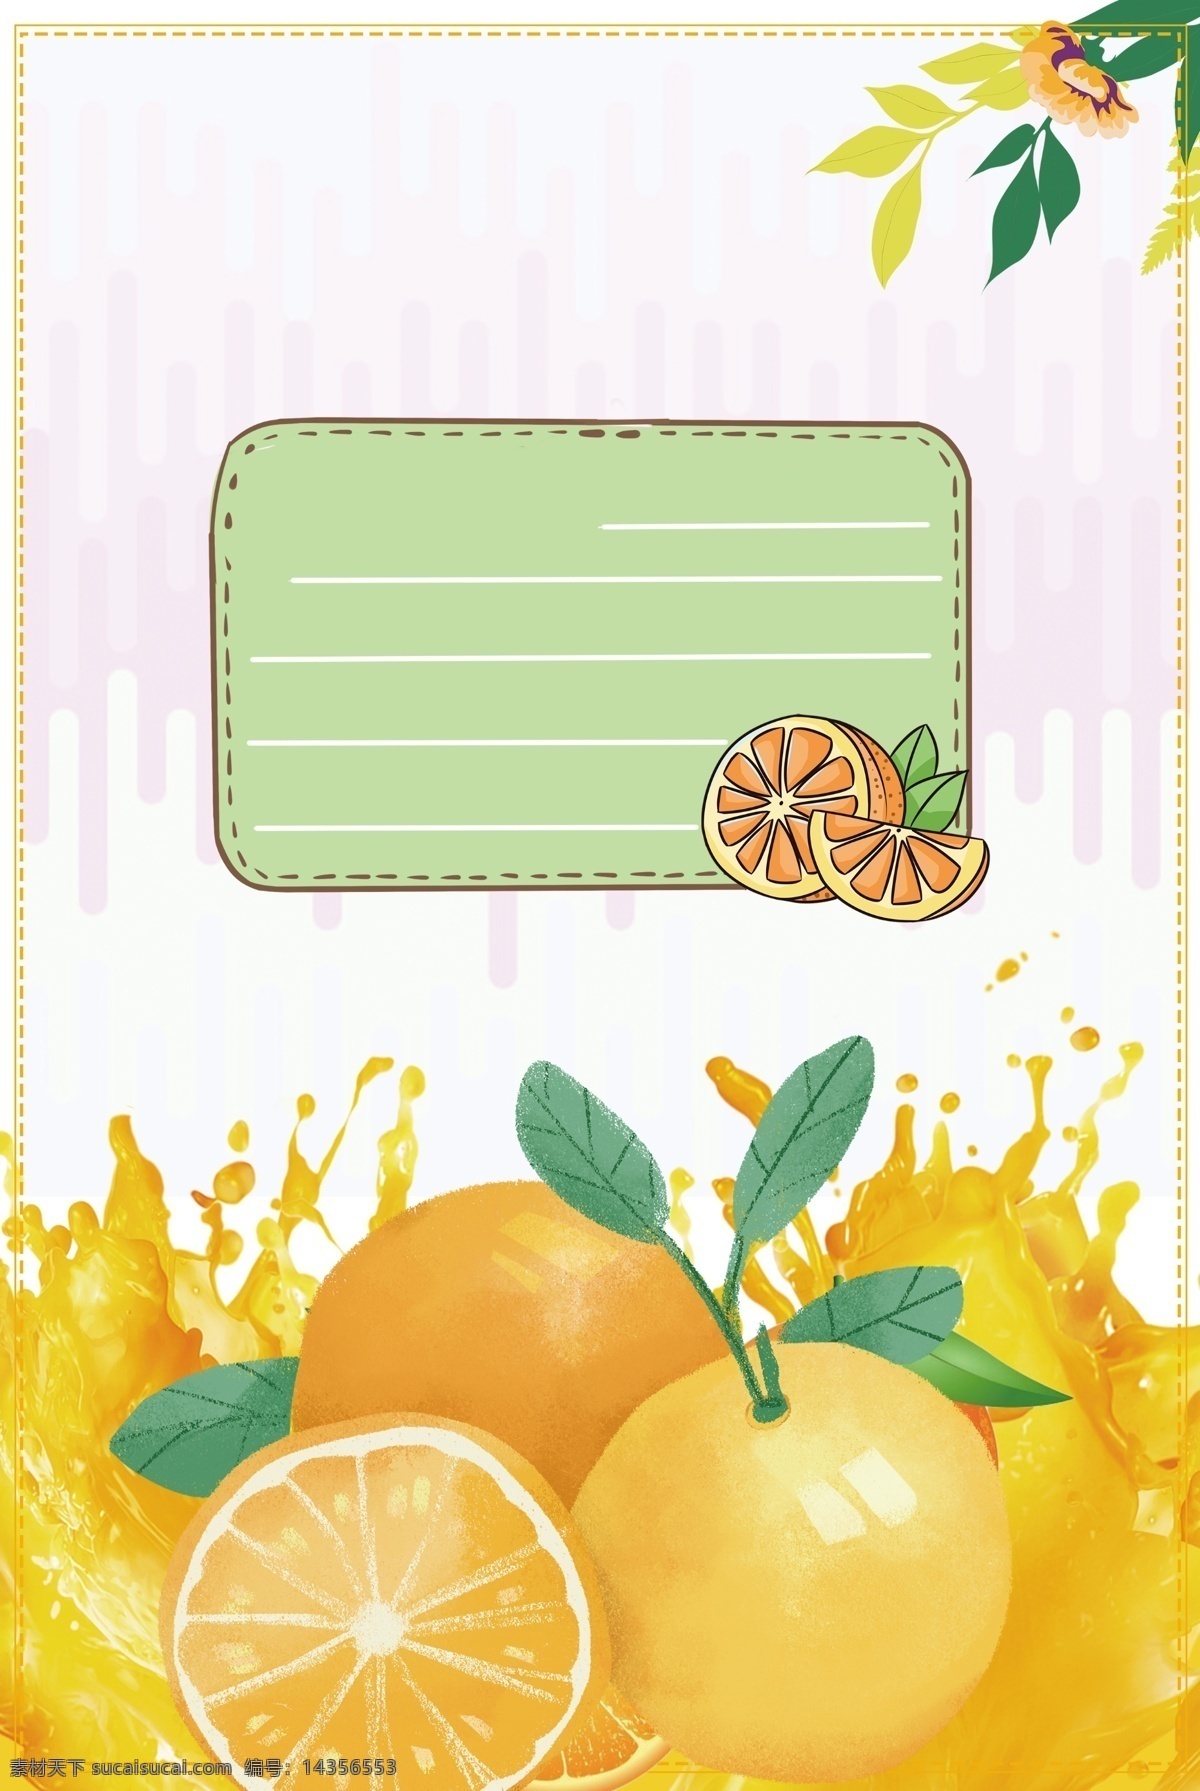 柑橘 创意 背景 橘子 桔子 一月水果 水果 水果背景 柑橘背景 水果店背景 水果促销 水果素材 温暖幸福